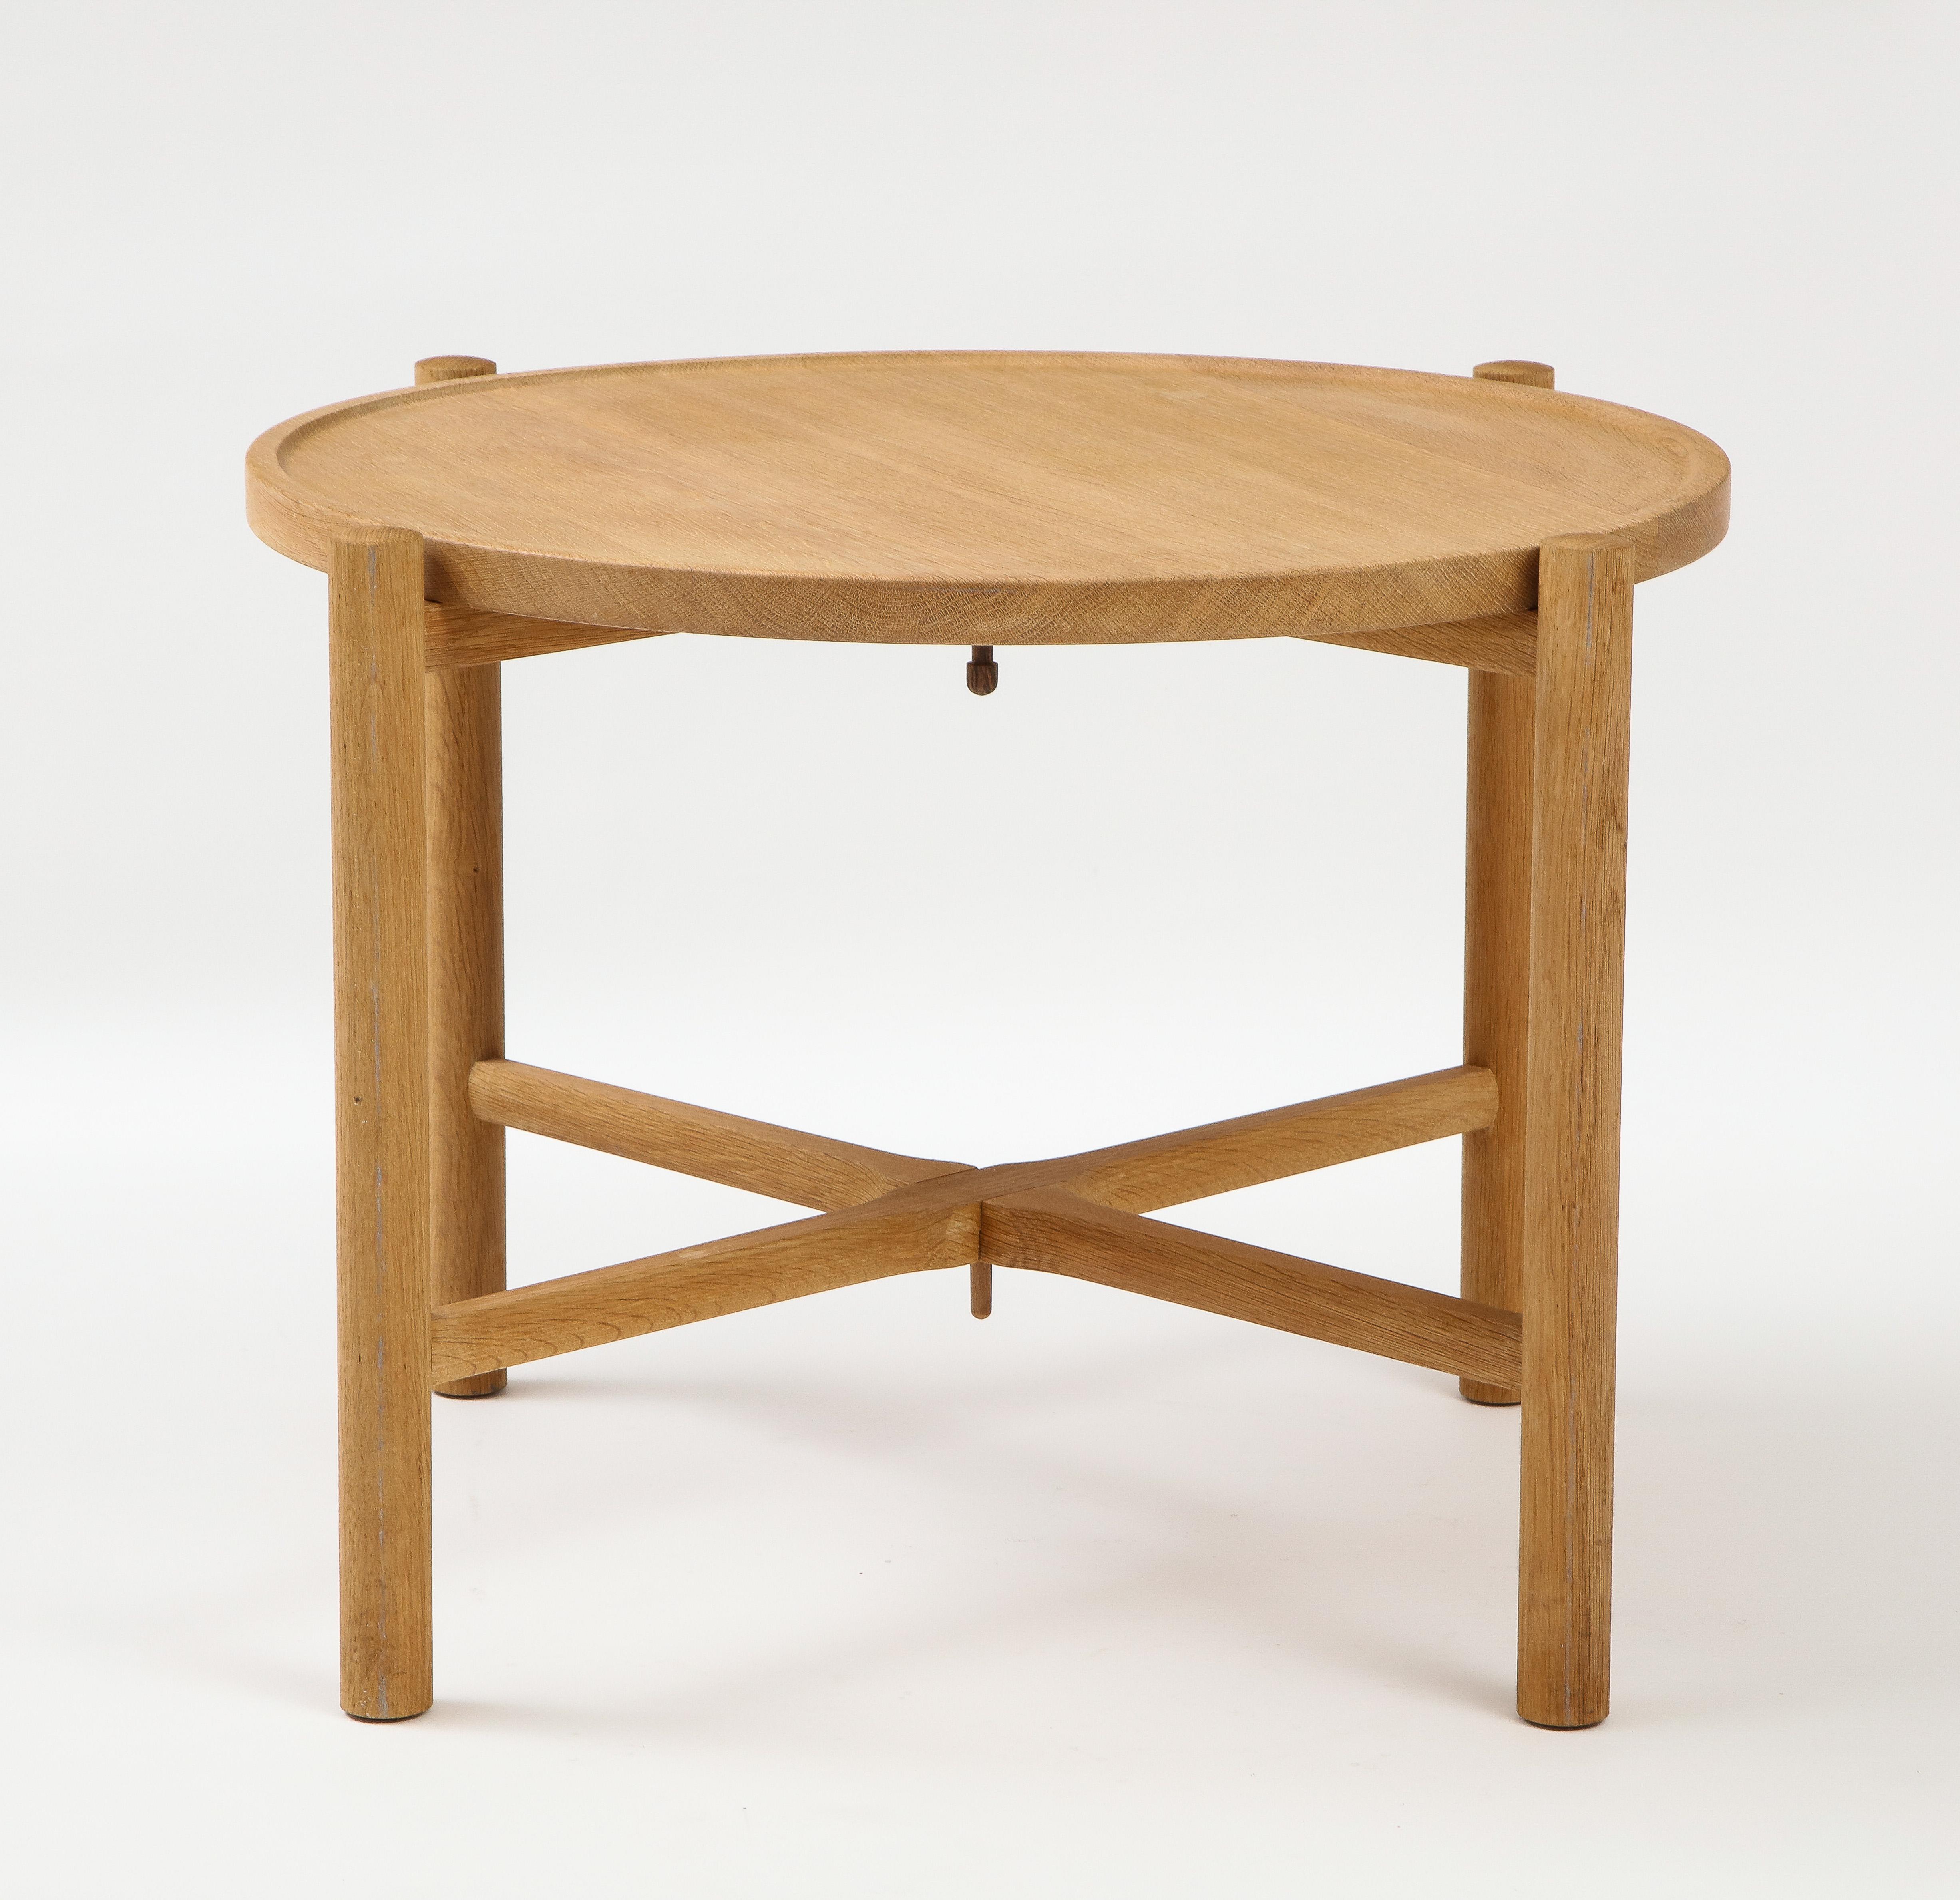 Danish Hans Wegner Round Tray Table, Mod. PP35, Denmark, c. 1960's